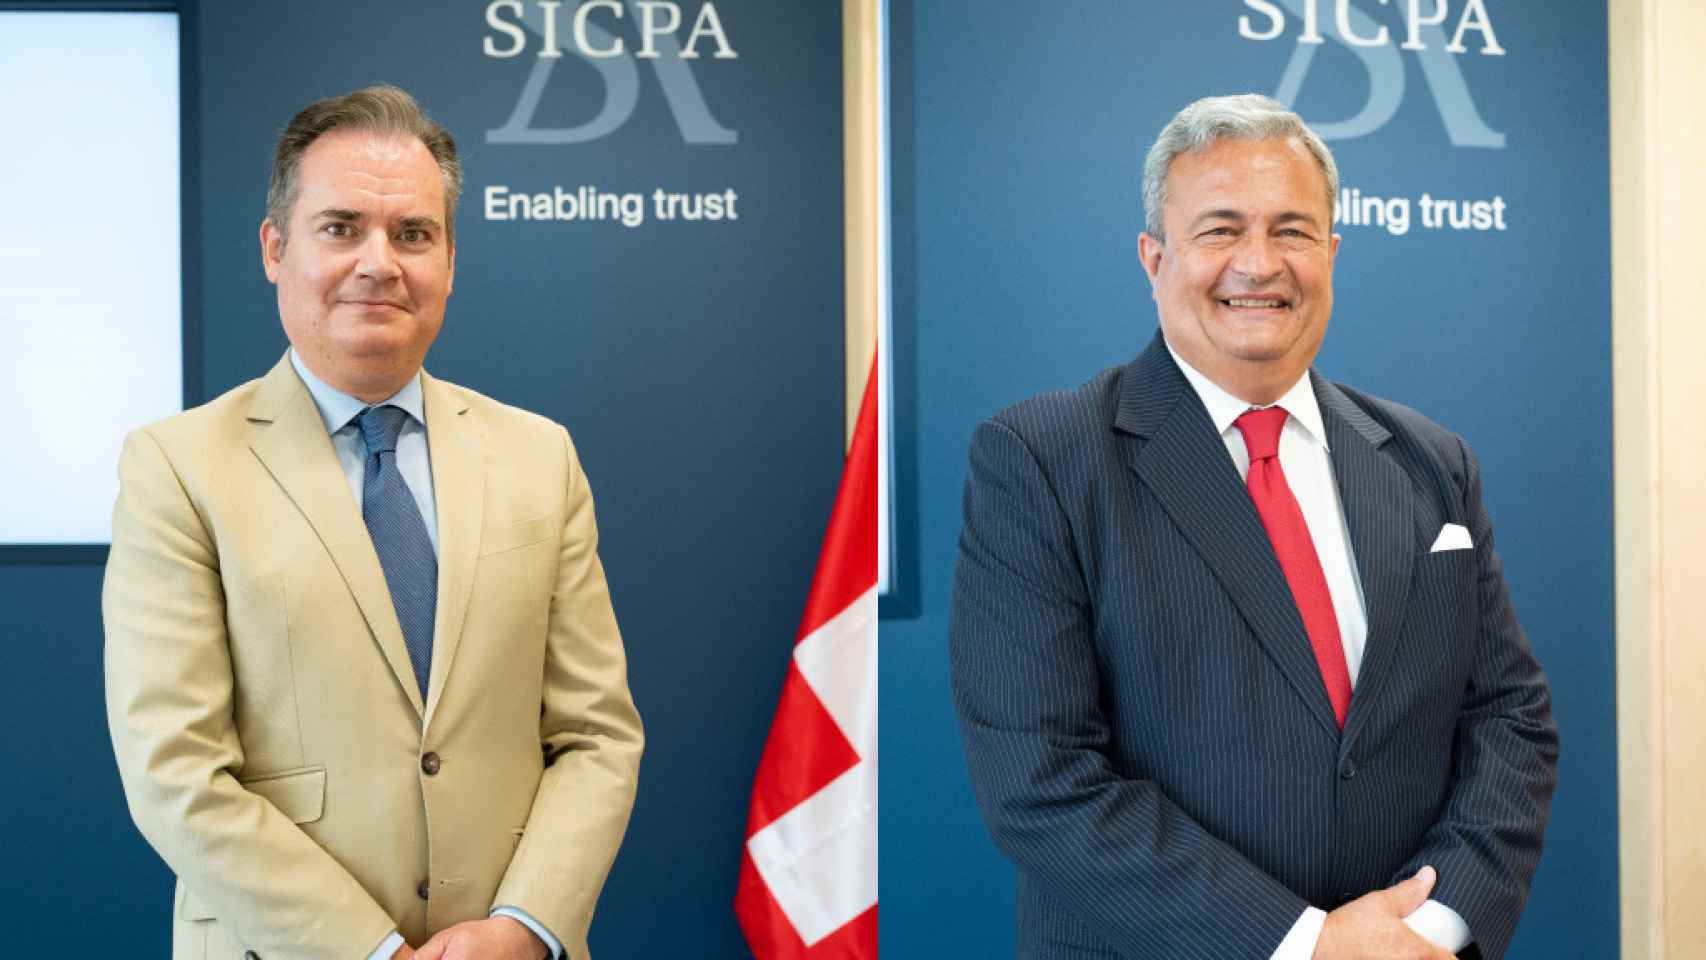 Fabián Torres, Director de Desarrollo de Negocio de SICPA, y Martín Sarobe, CEO de SICPA